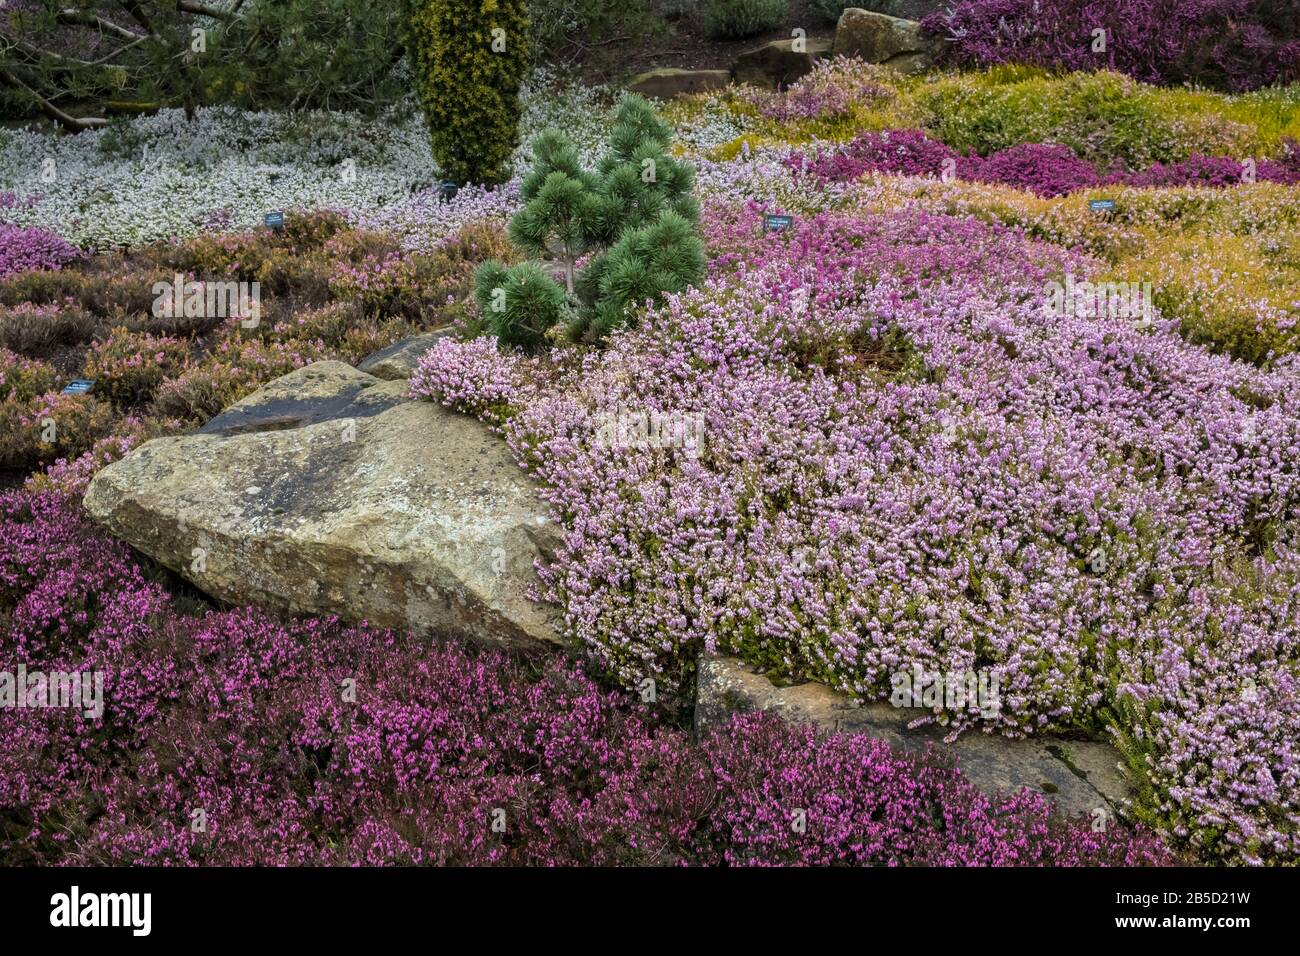 Fleurs Ericea Carnea plantes cultivar en février / mars donnant un affichage coloré de jardin en fin d'hiver ou au début du printemps, Yorkshire, Angleterre, Royaume-Uni Banque D'Images